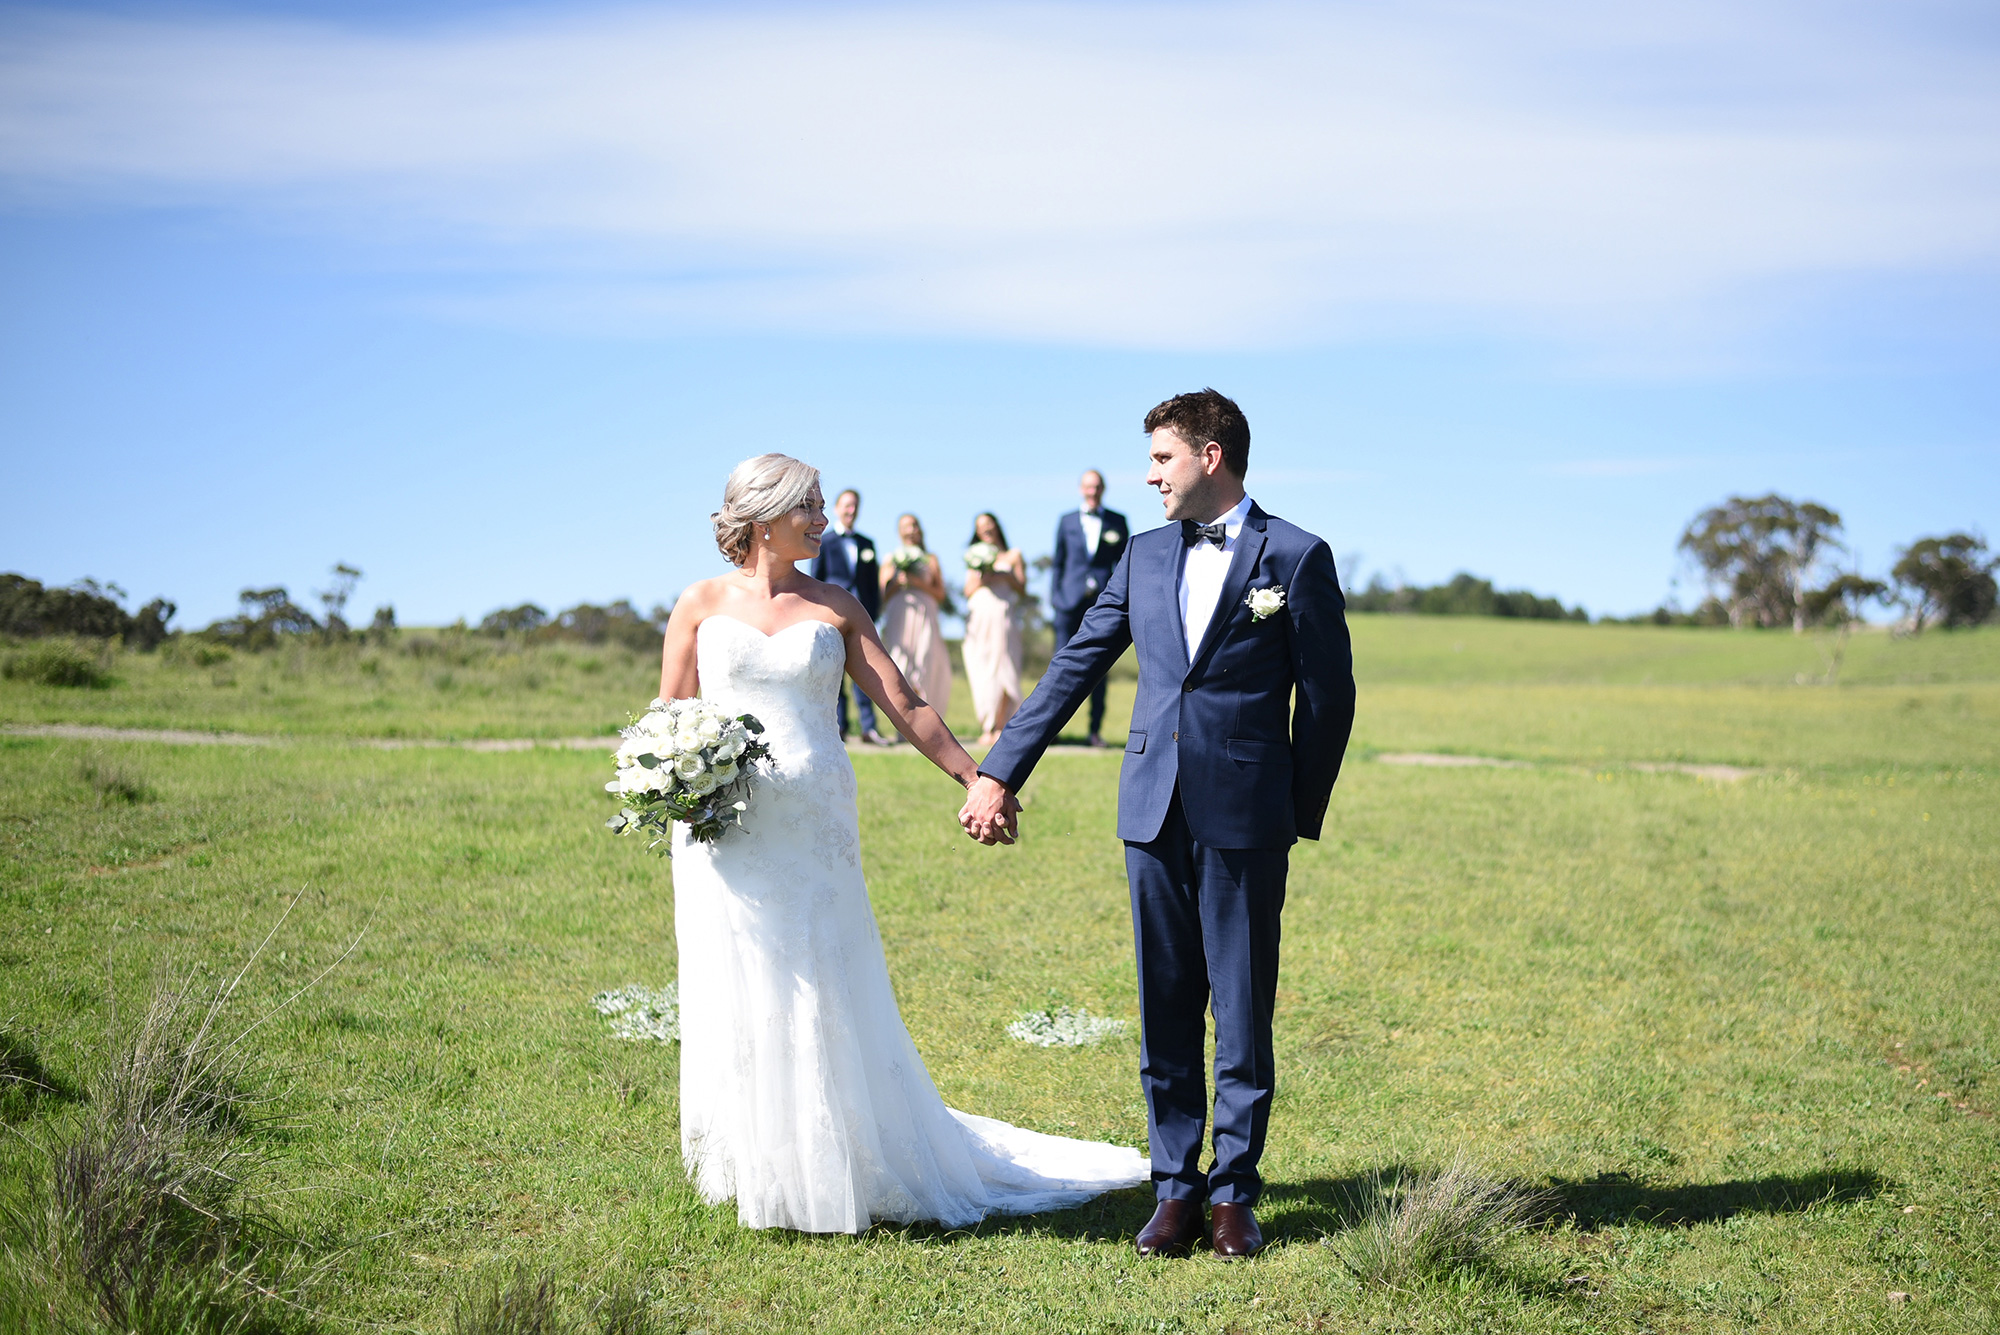 Crystal_Zach_Rustic-Farm-Wedding_015